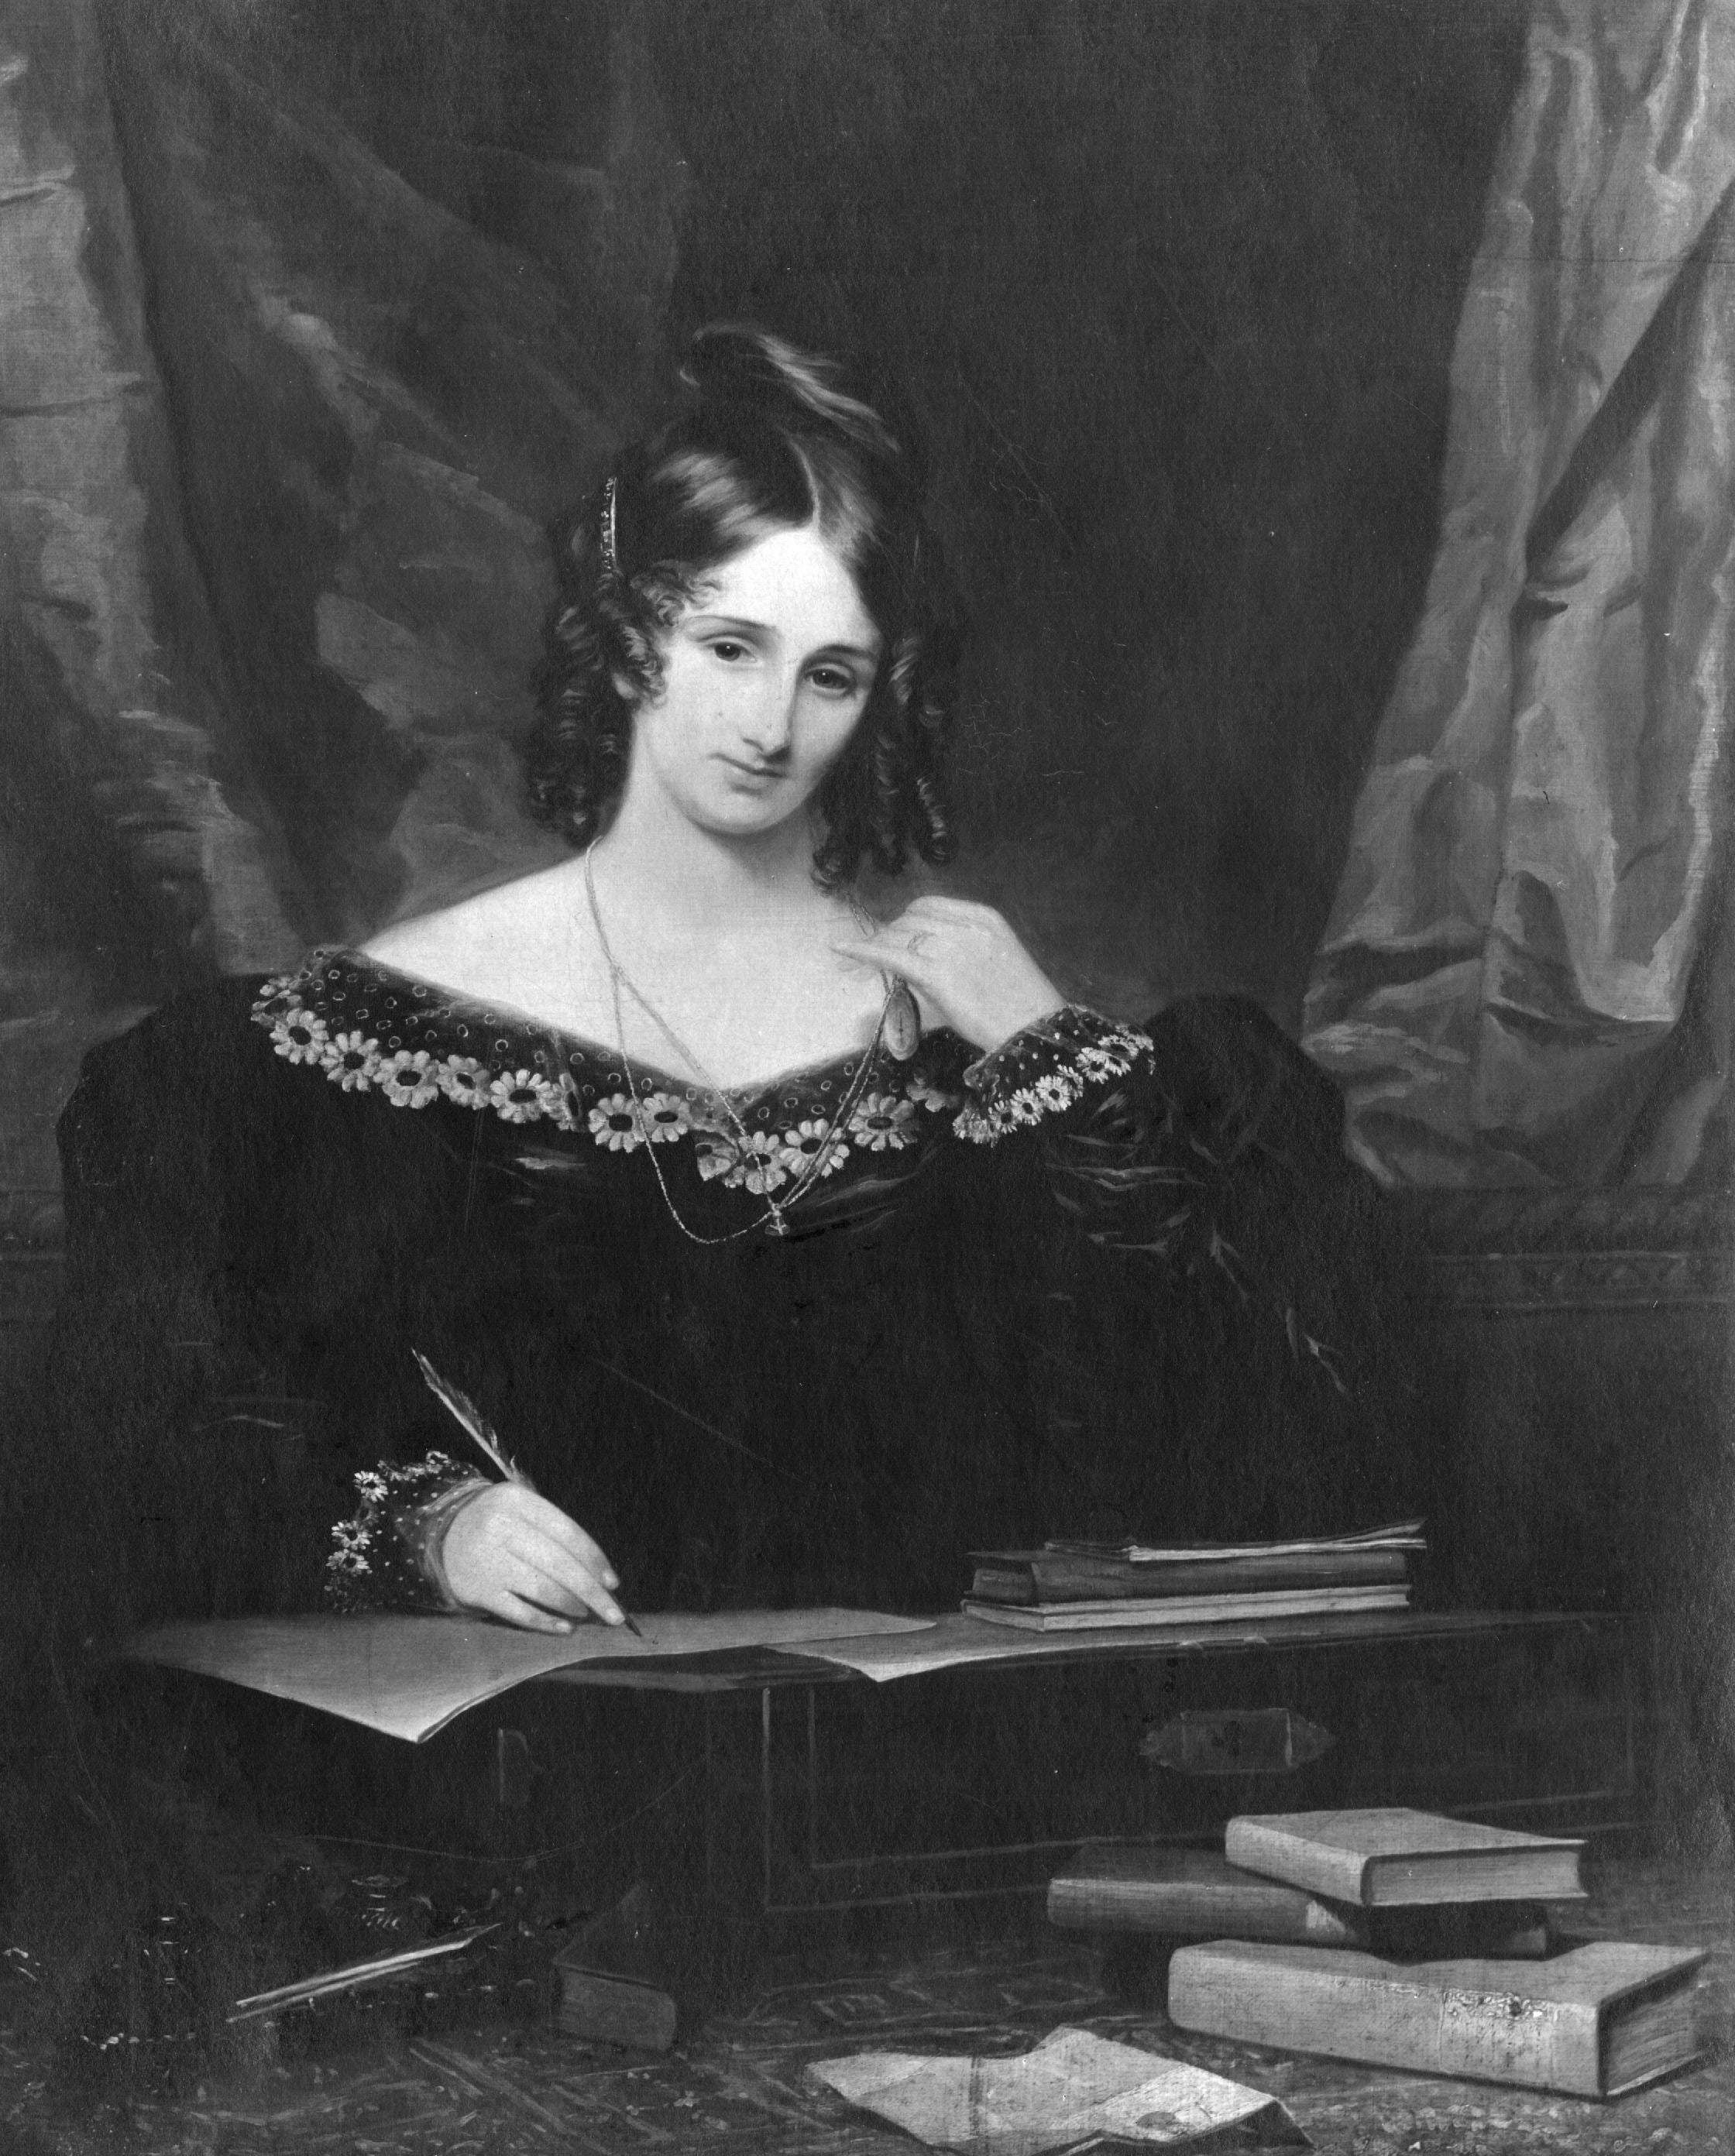 Ein Schwarz-Weiß-Bild von Mary Shelley, die ein dunkles Kleid trägt und schreibt und von Büchern umgeben ist